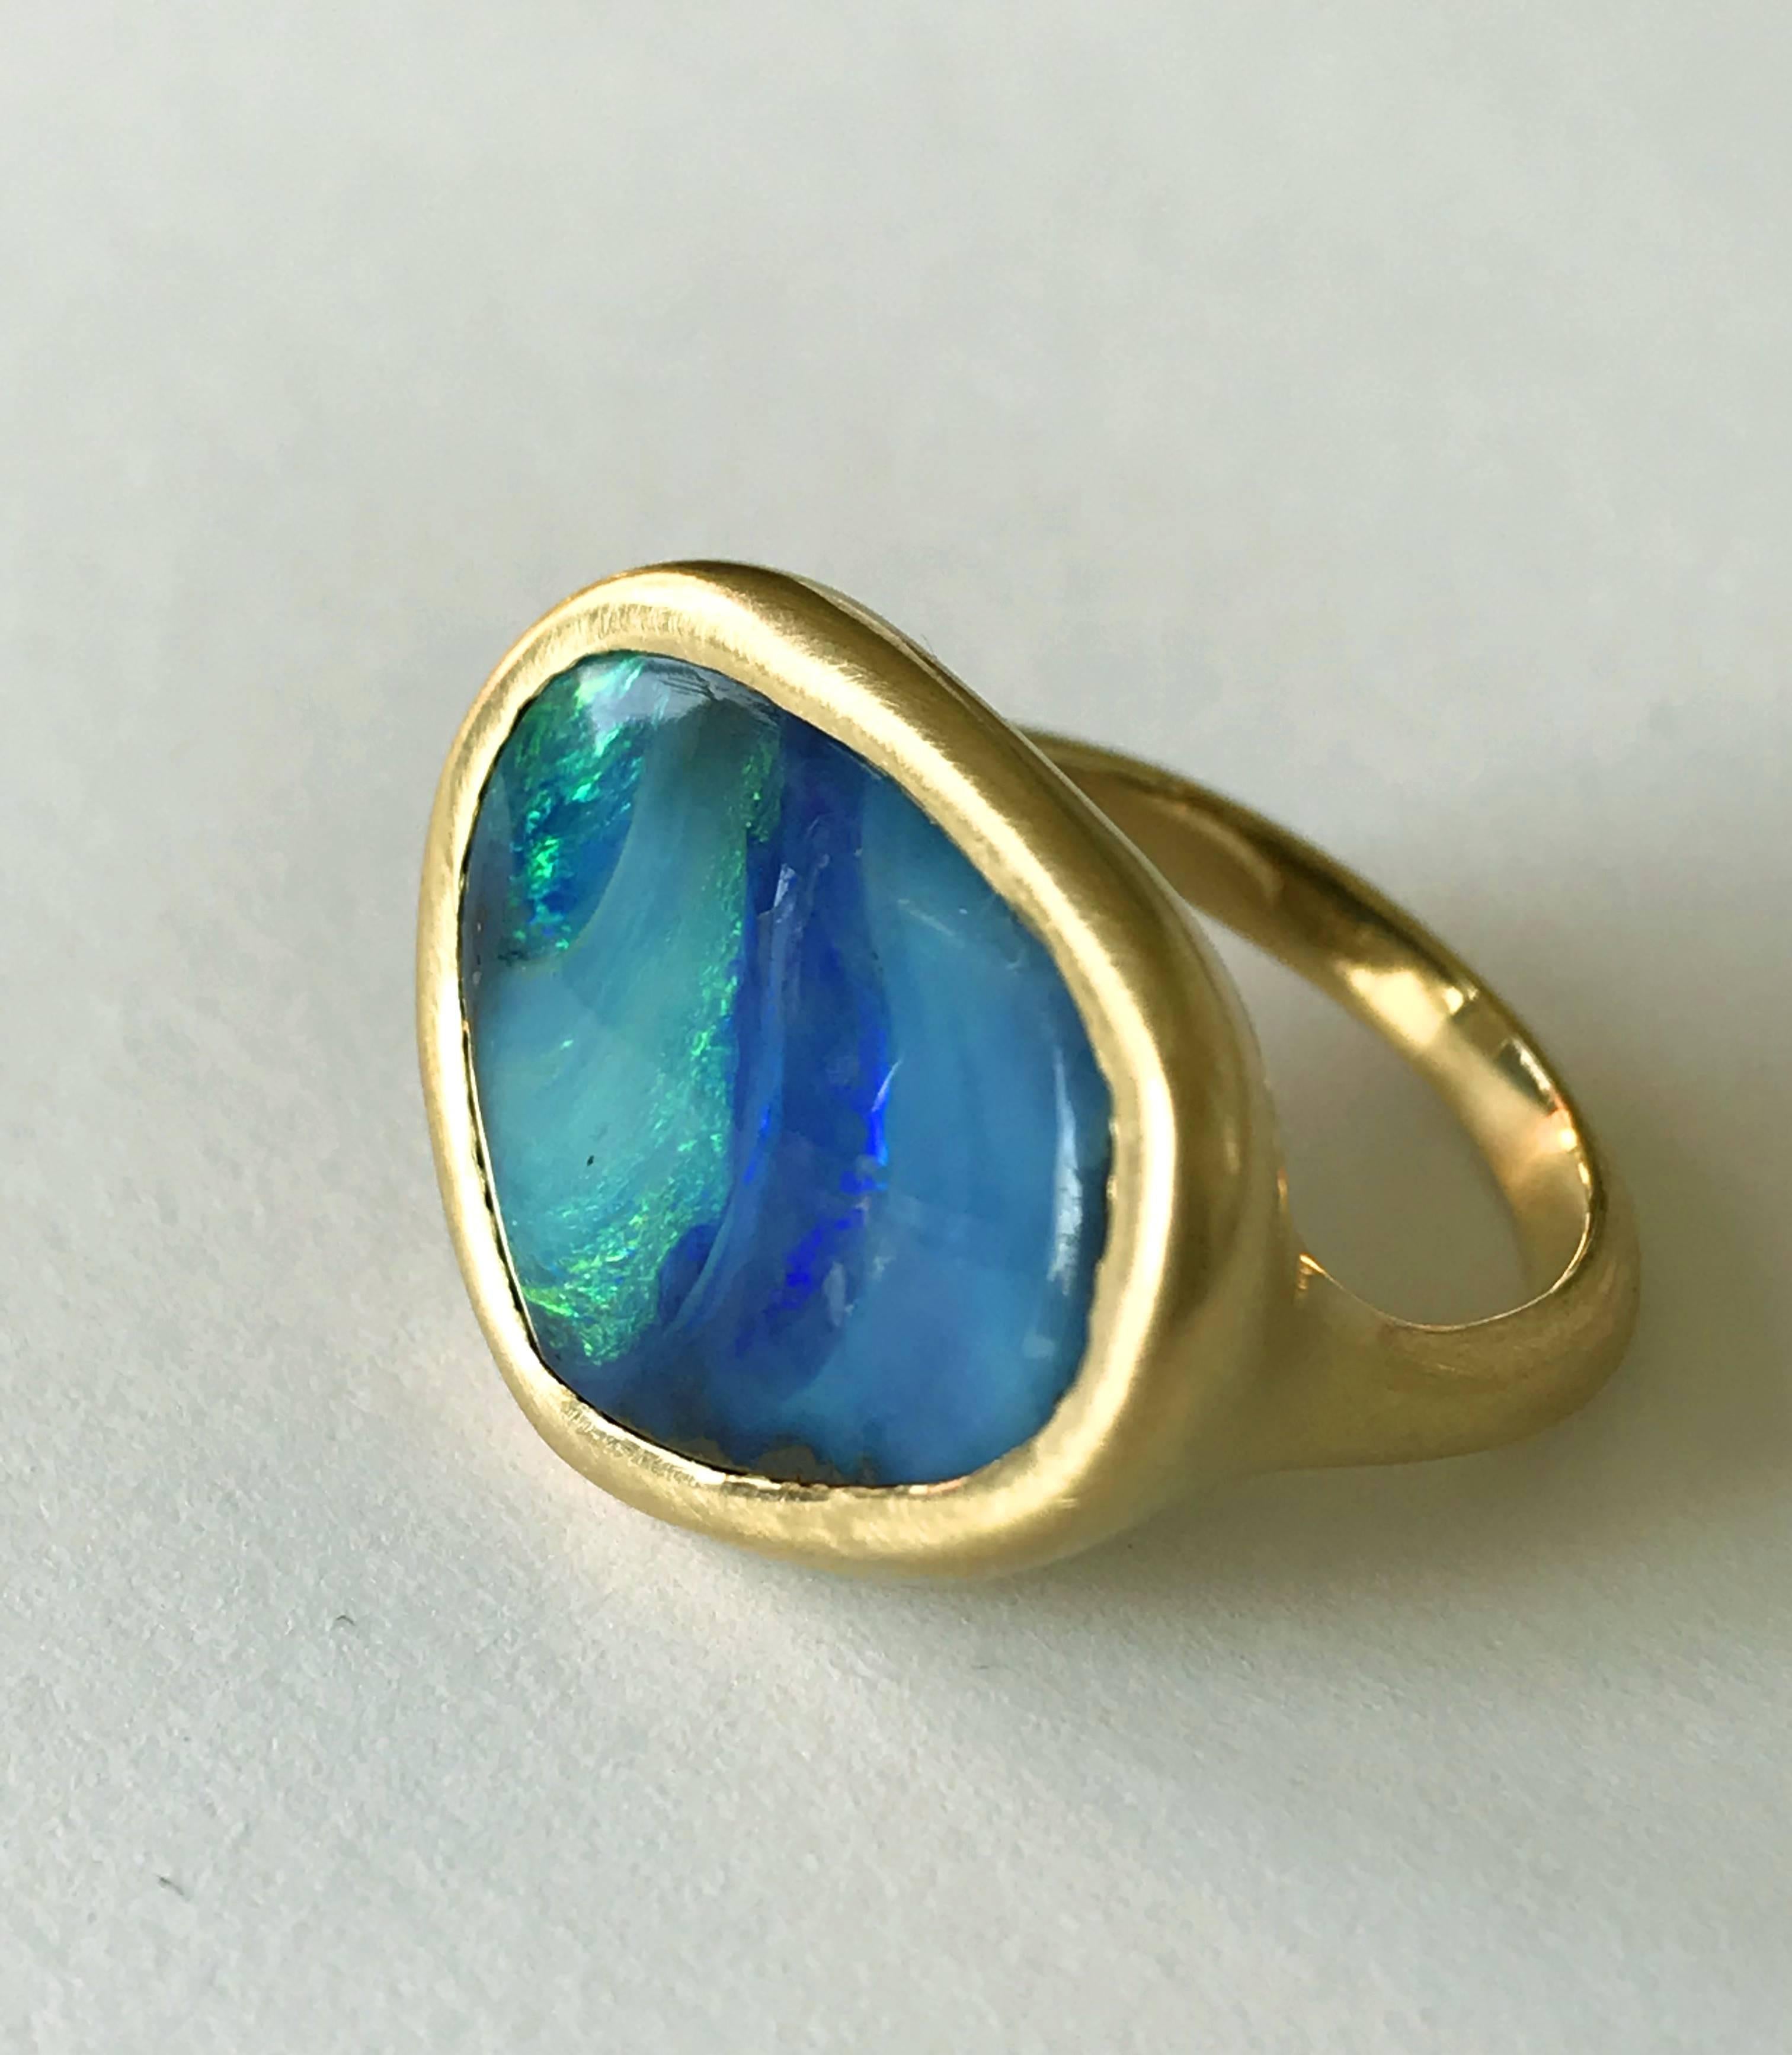 Dalben Design Einzigartiger Ring aus 18 Karat Gelbgold mit einem 9,6 Karat großen, blaugrünen australischen Boulder-Opal in Lünettenfassung.  
Dieser australische Boulder Opal hat die Farben des Meeresbodens 
Ringgröße 6 3/4 - EU 54 mit